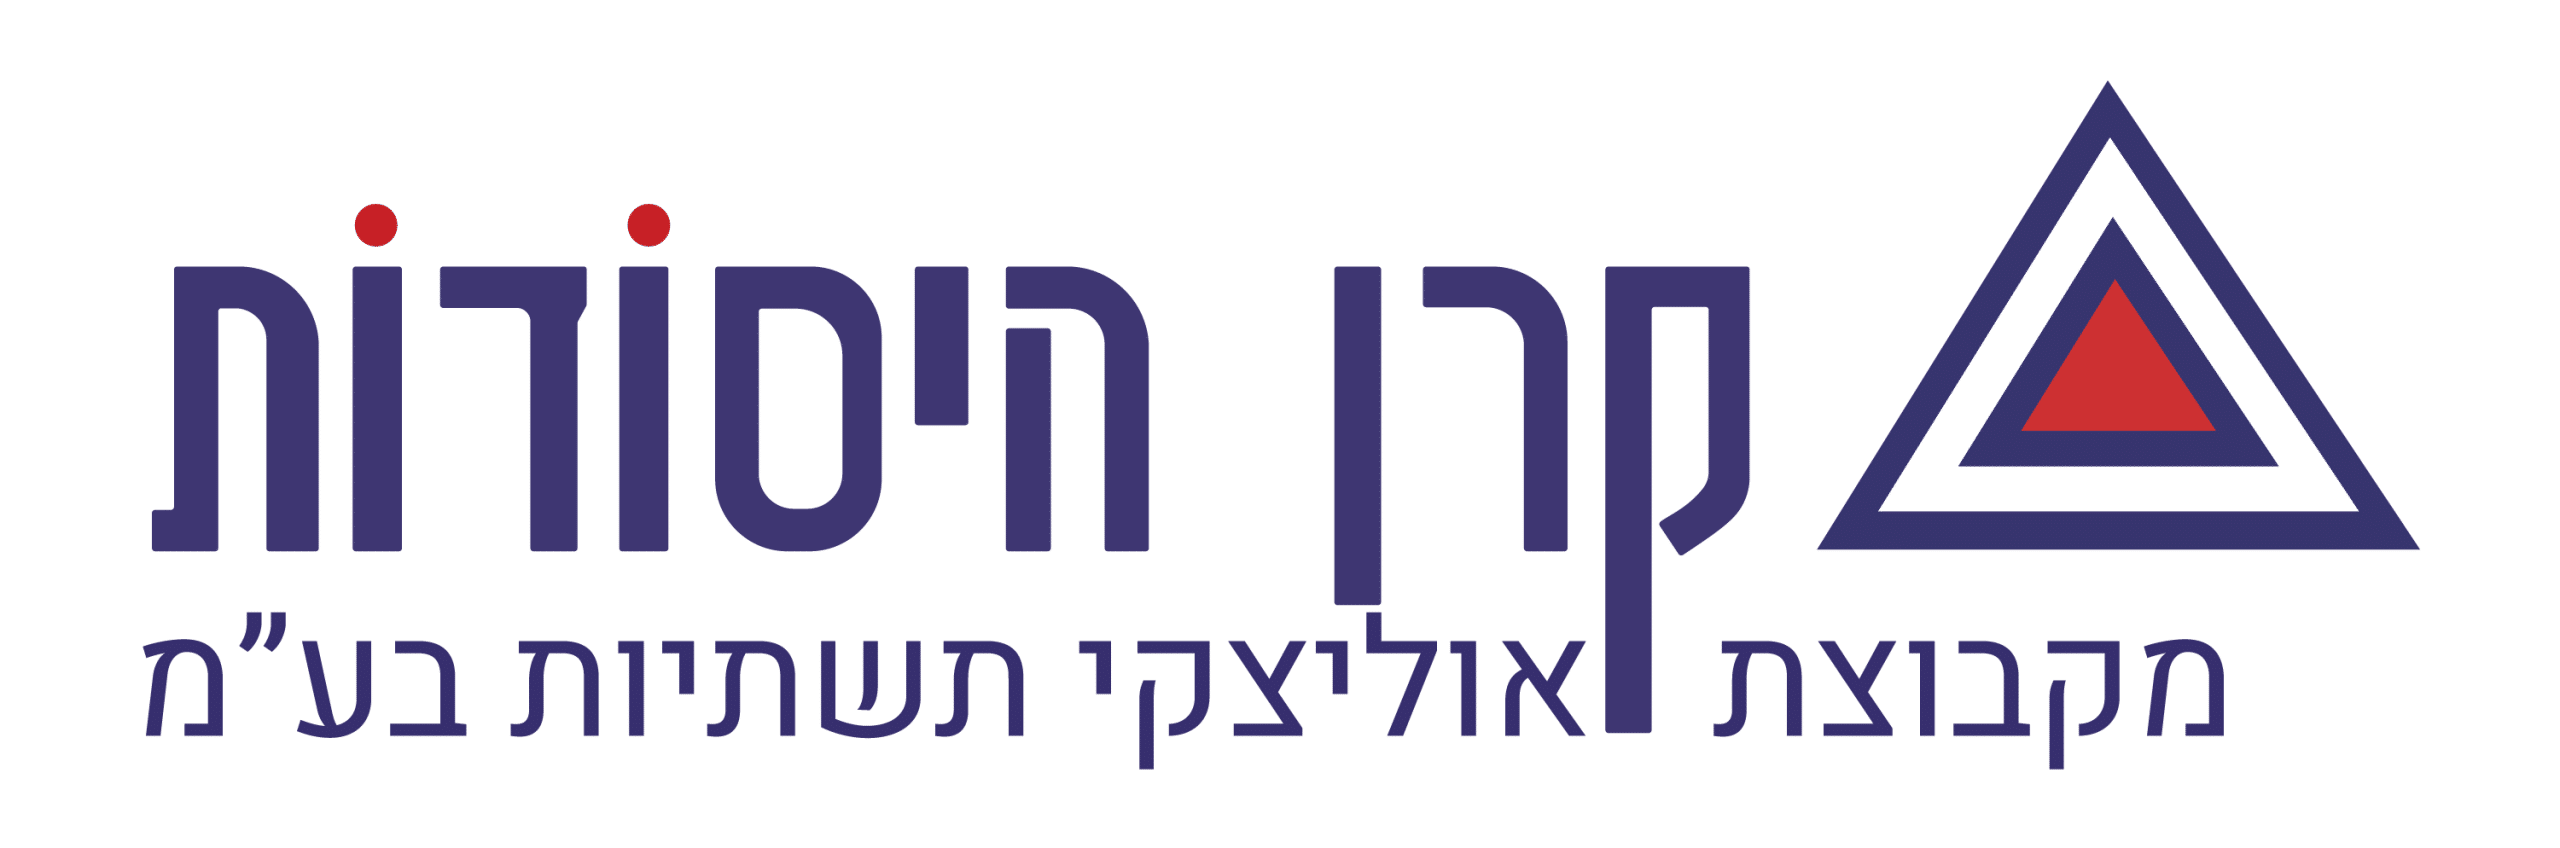 לוגו עם המילים אדריה בעברית.